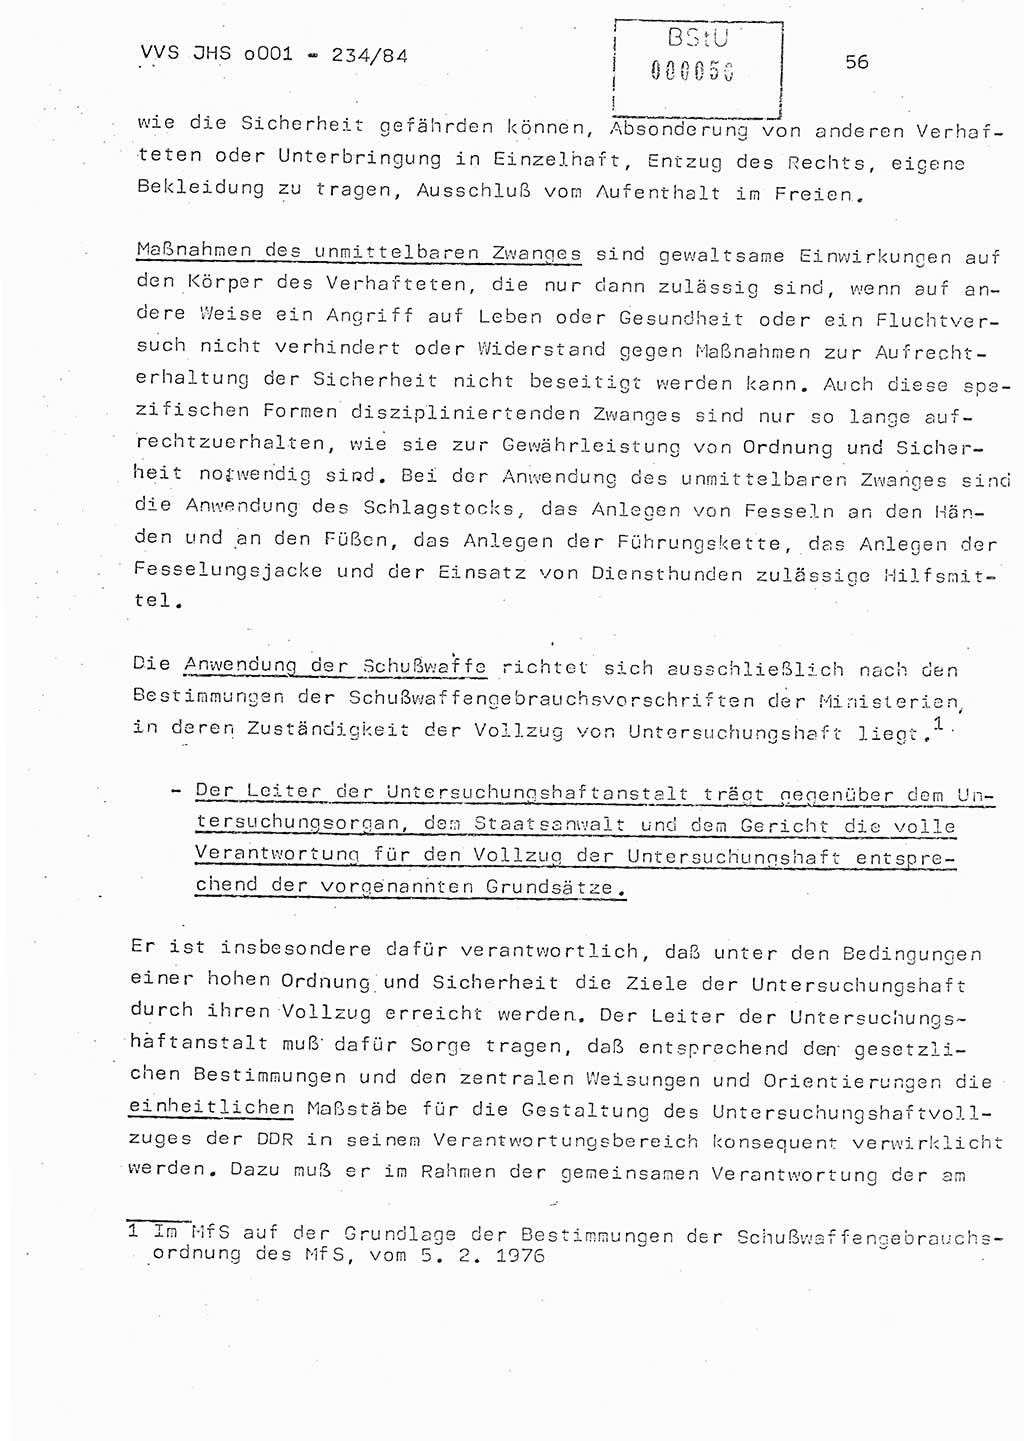 Dissertation Oberst Siegfried Rataizick (Abt. ⅩⅣ), Oberstleutnant Volkmar Heinz (Abt. ⅩⅣ), Oberstleutnant Werner Stein (HA Ⅸ), Hauptmann Heinz Conrad (JHS), Ministerium für Staatssicherheit (MfS) [Deutsche Demokratische Republik (DDR)], Juristische Hochschule (JHS), Vertrauliche Verschlußsache (VVS) o001-234/84, Potsdam 1984, Seite 56 (Diss. MfS DDR JHS VVS o001-234/84 1984, S. 56)